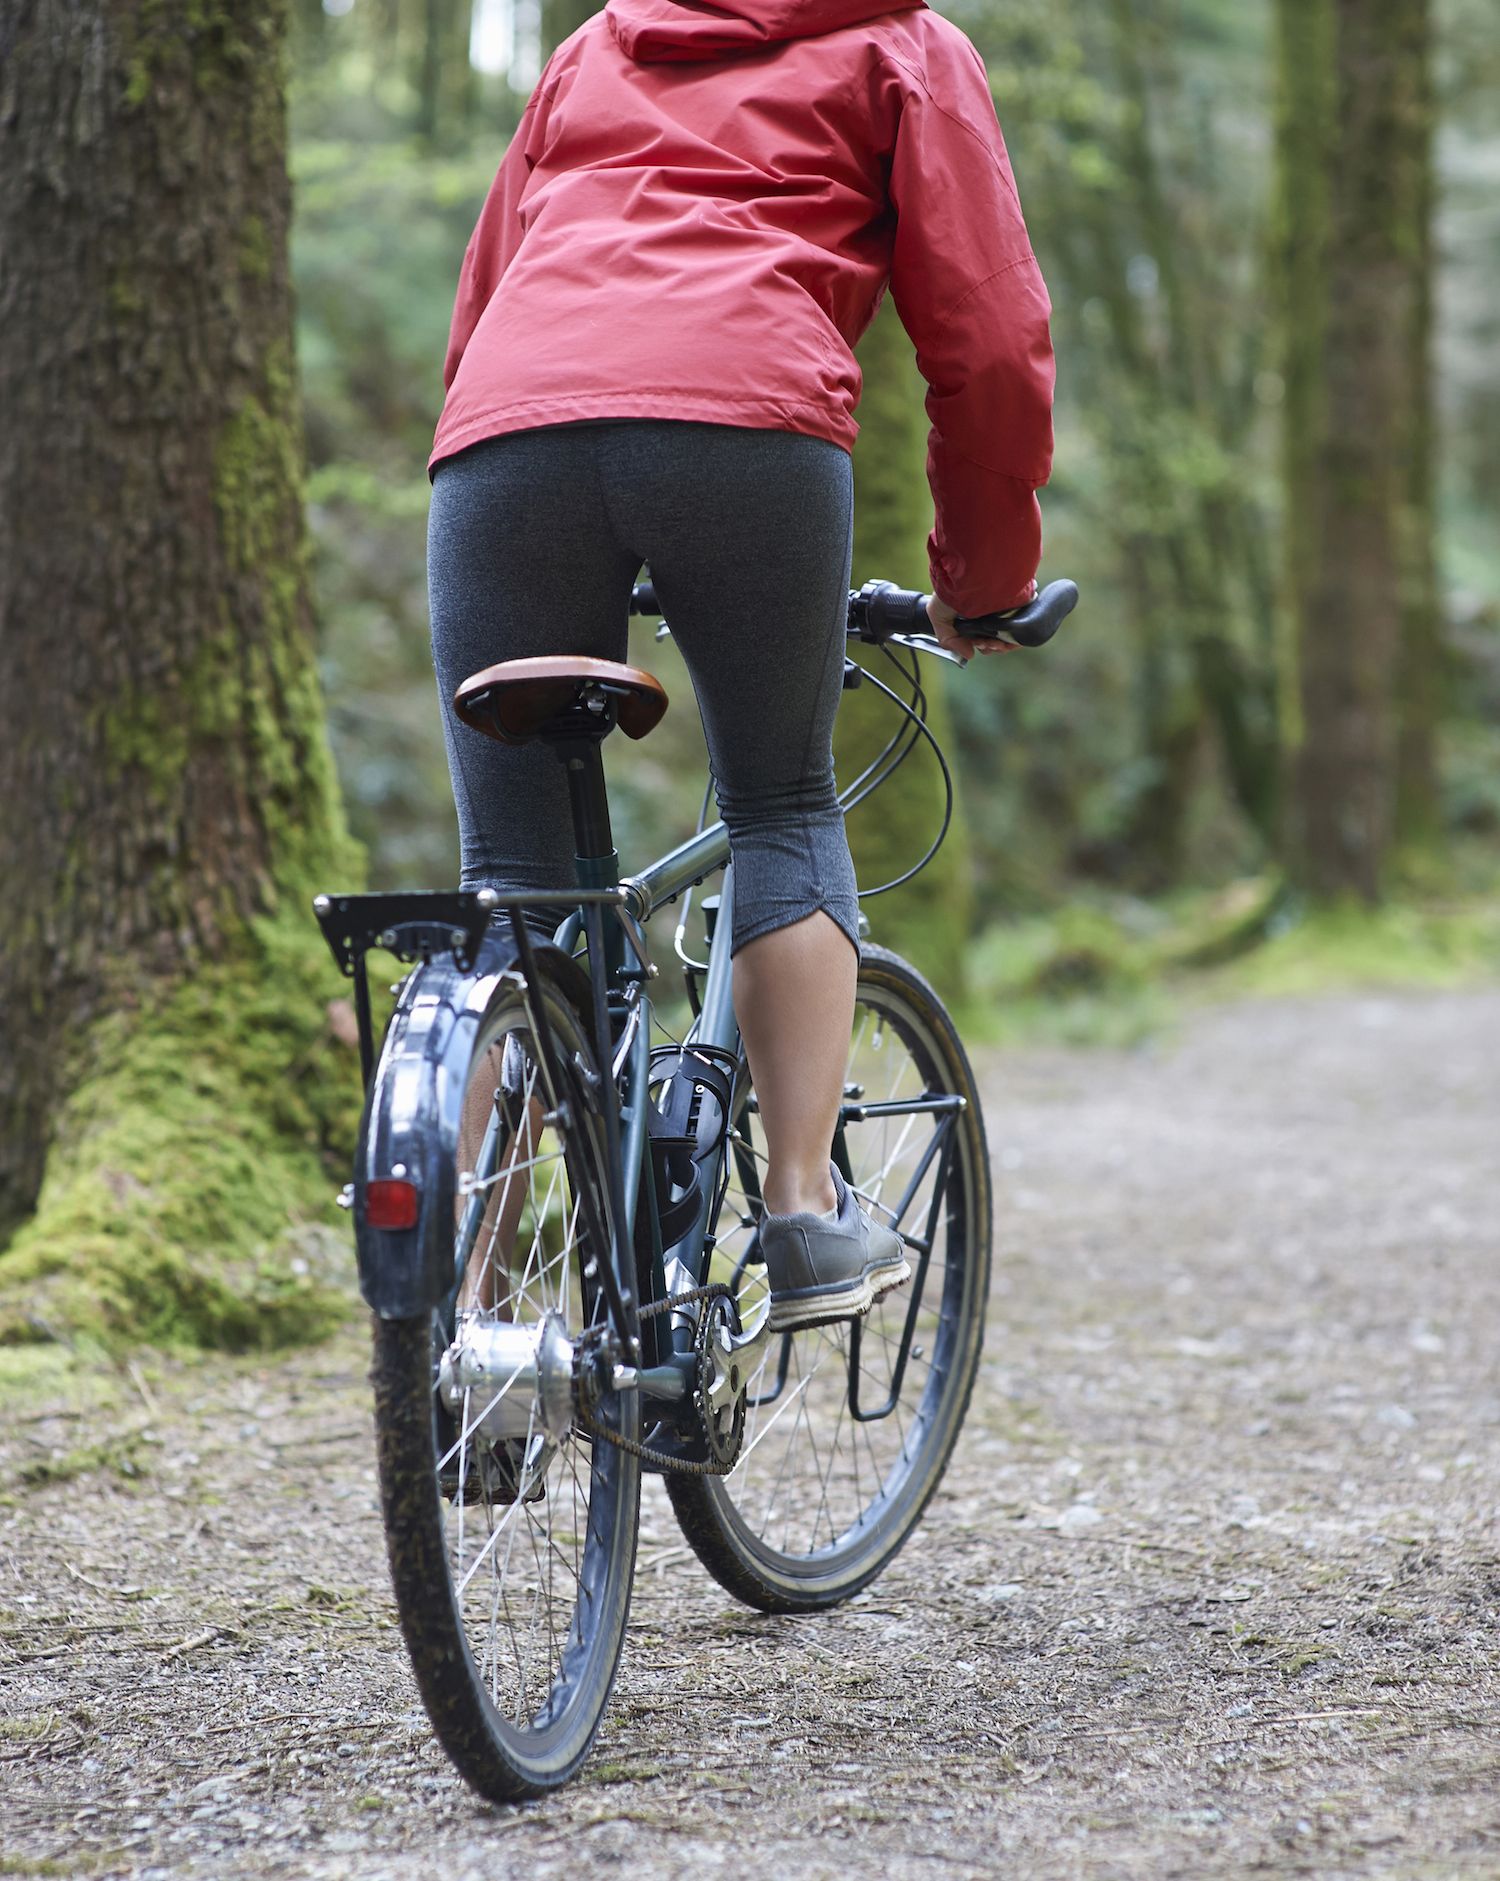 นักปั่นจักรยานขี่จักรยานไปตามเส้นทางในป่า